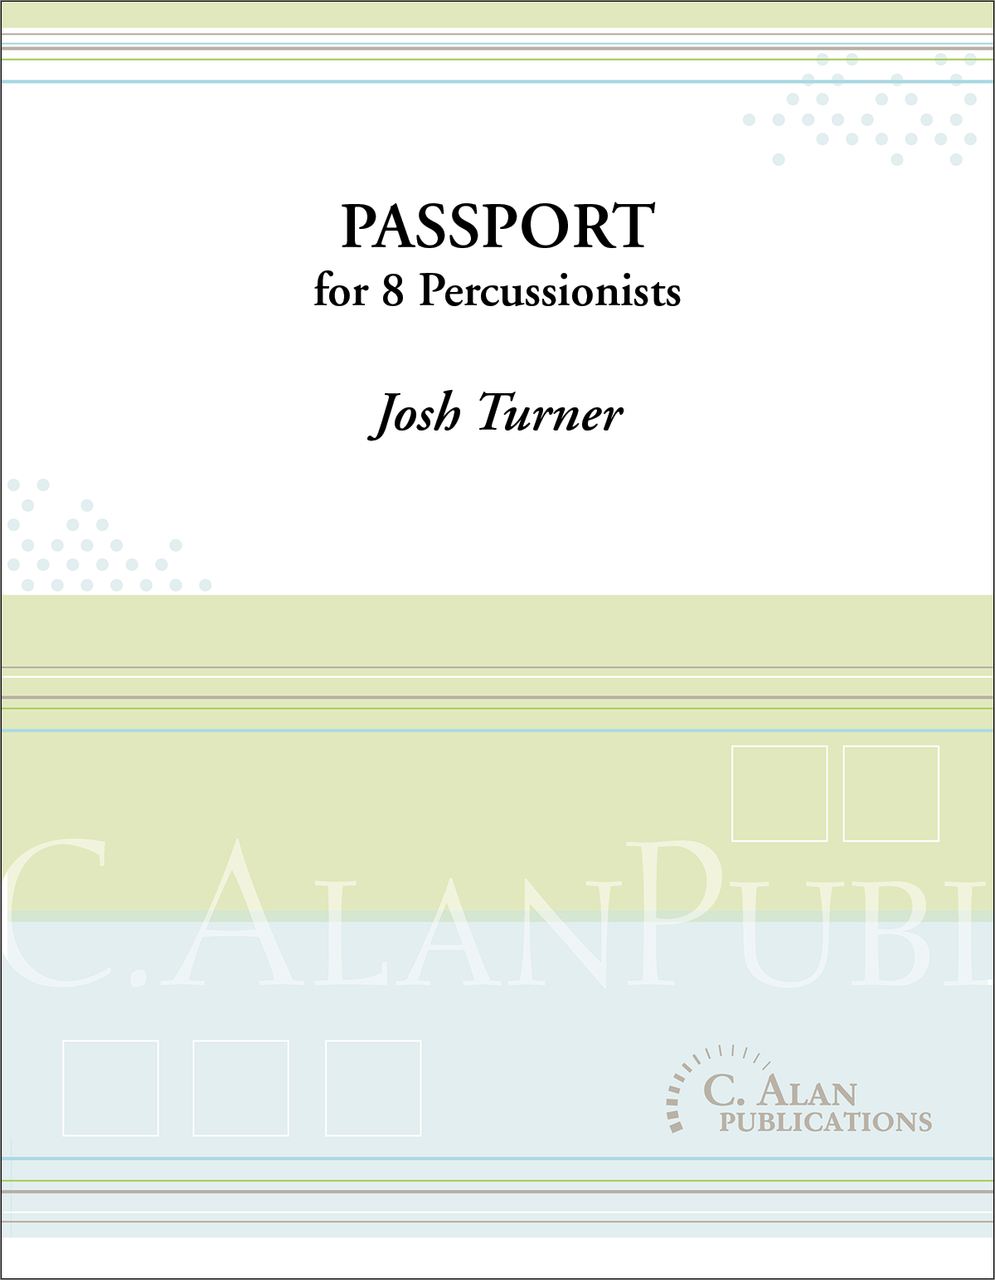 Passport by Josh Turner